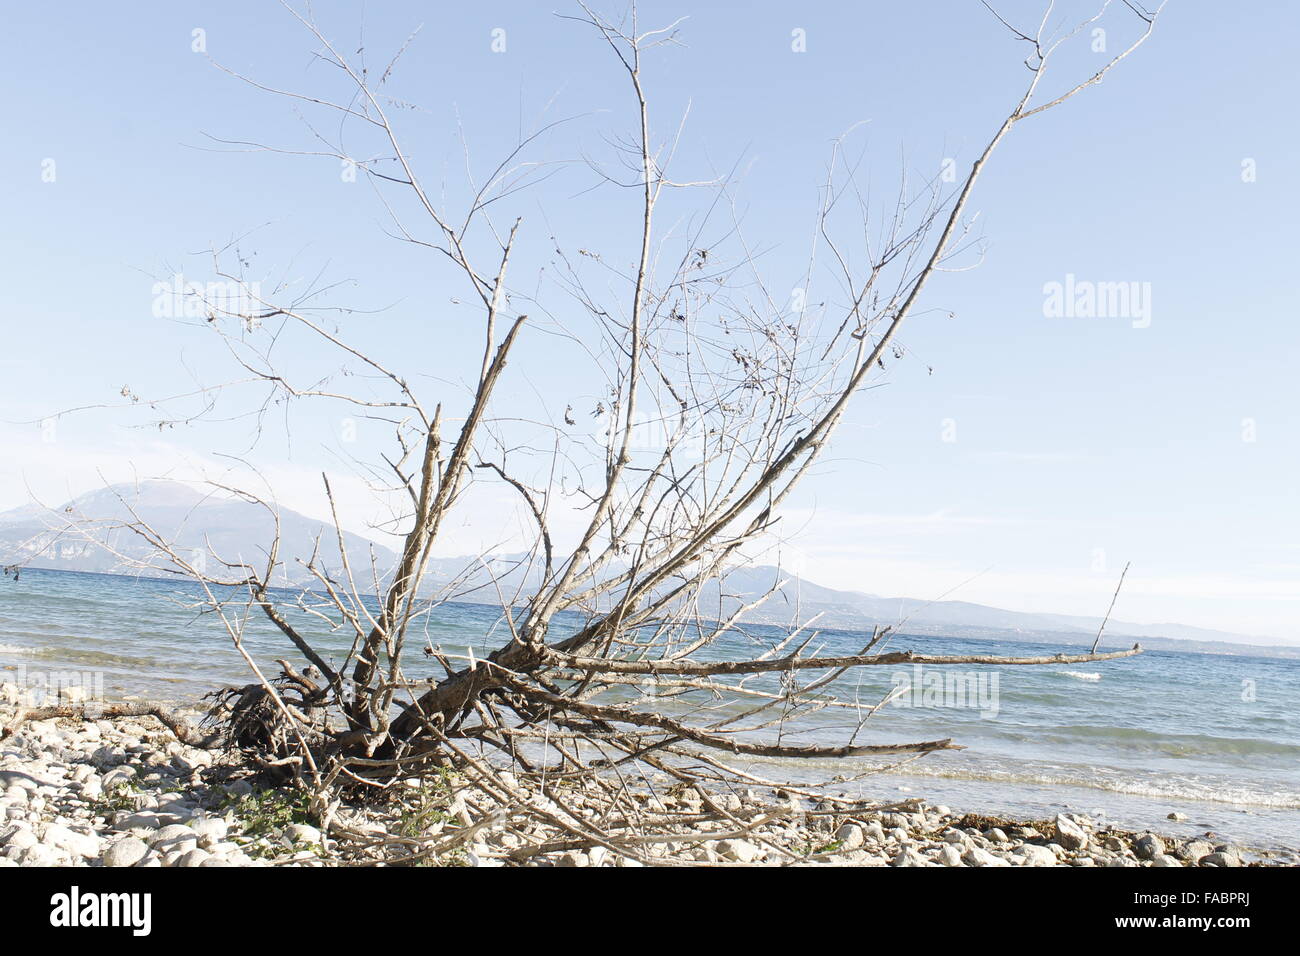 Direction générale de la sec sur une plage de galets du lac de Garde en Italie du nord Banque D'Images